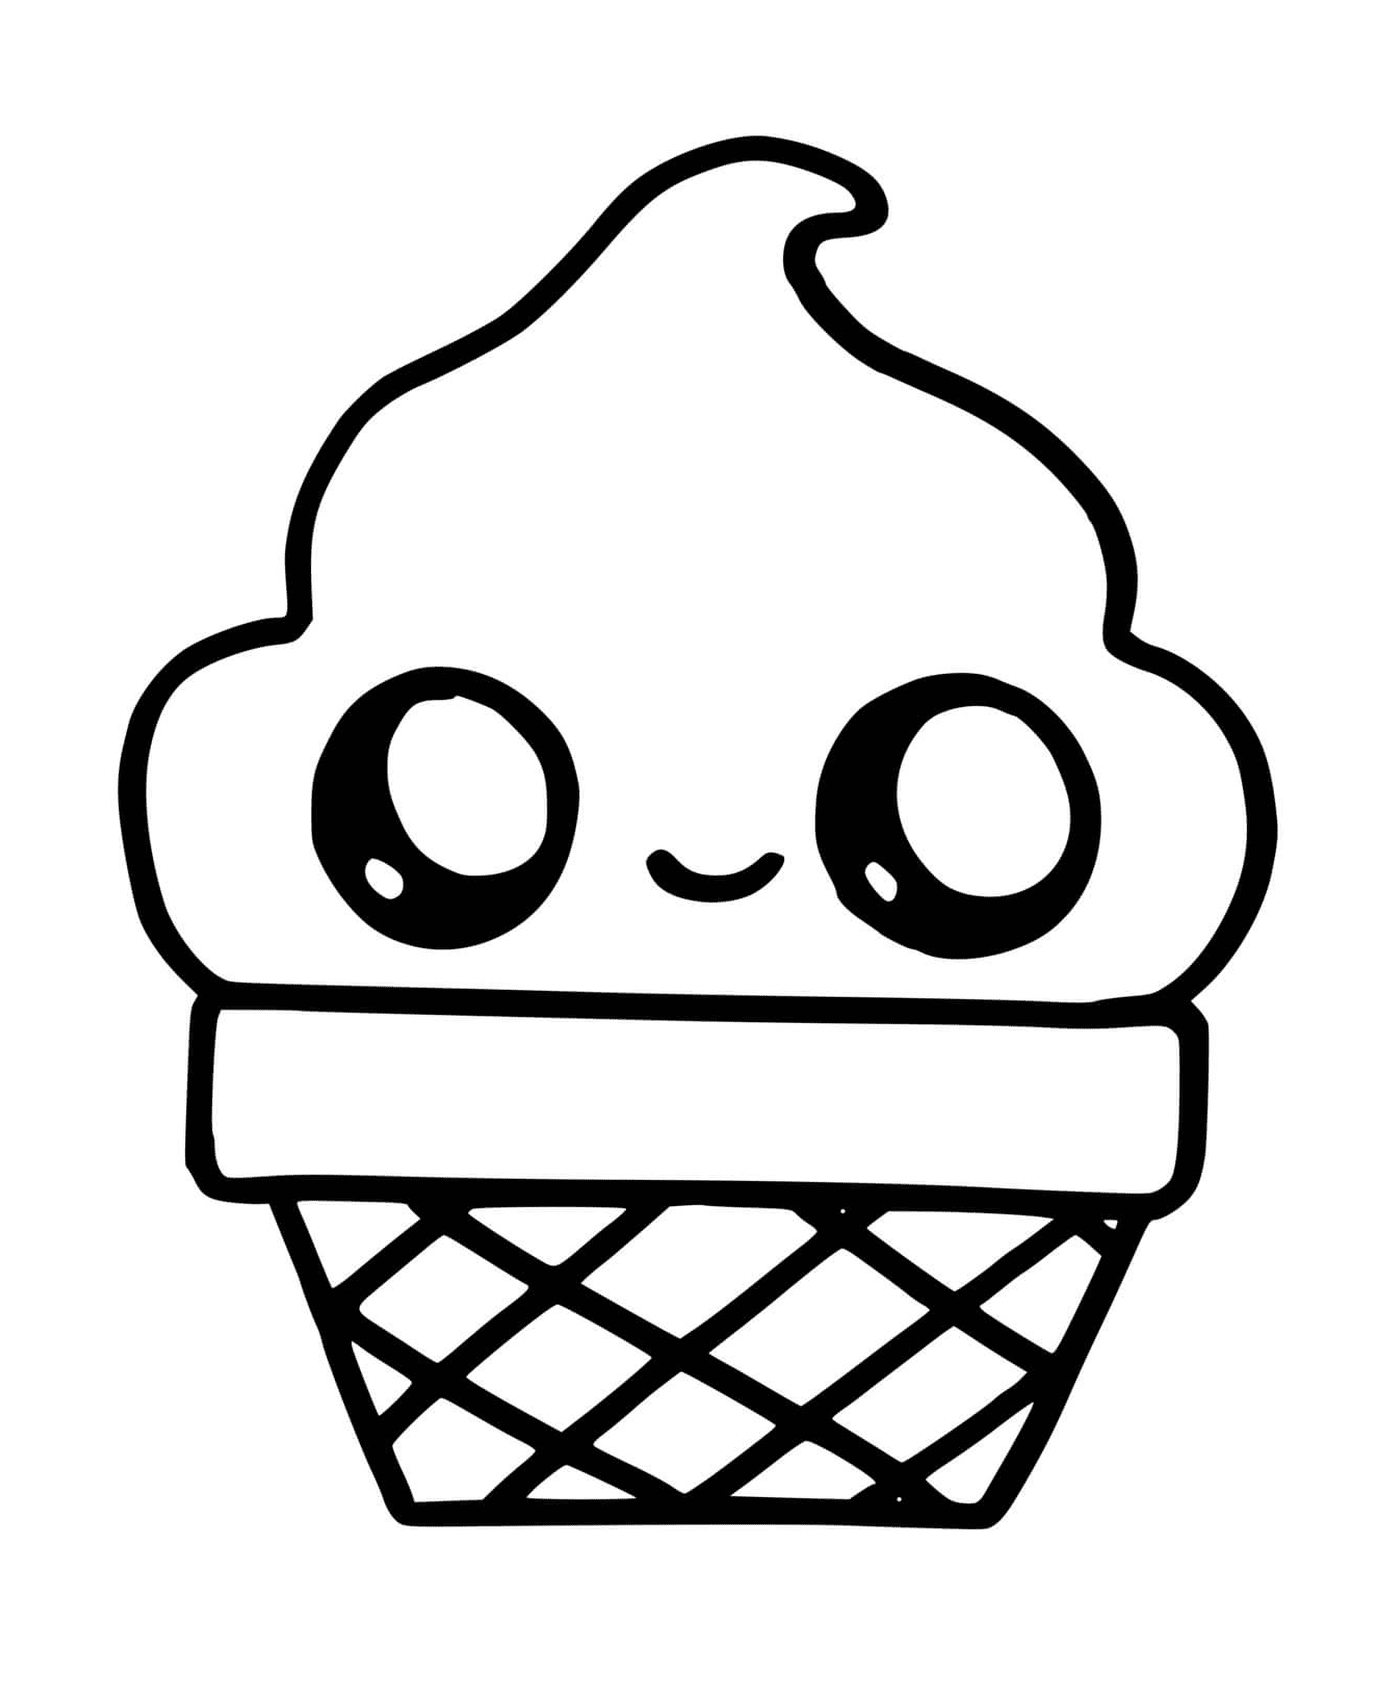  Ein Eiskegel mit einem lächelnden Gesicht darauf gezeichnet 